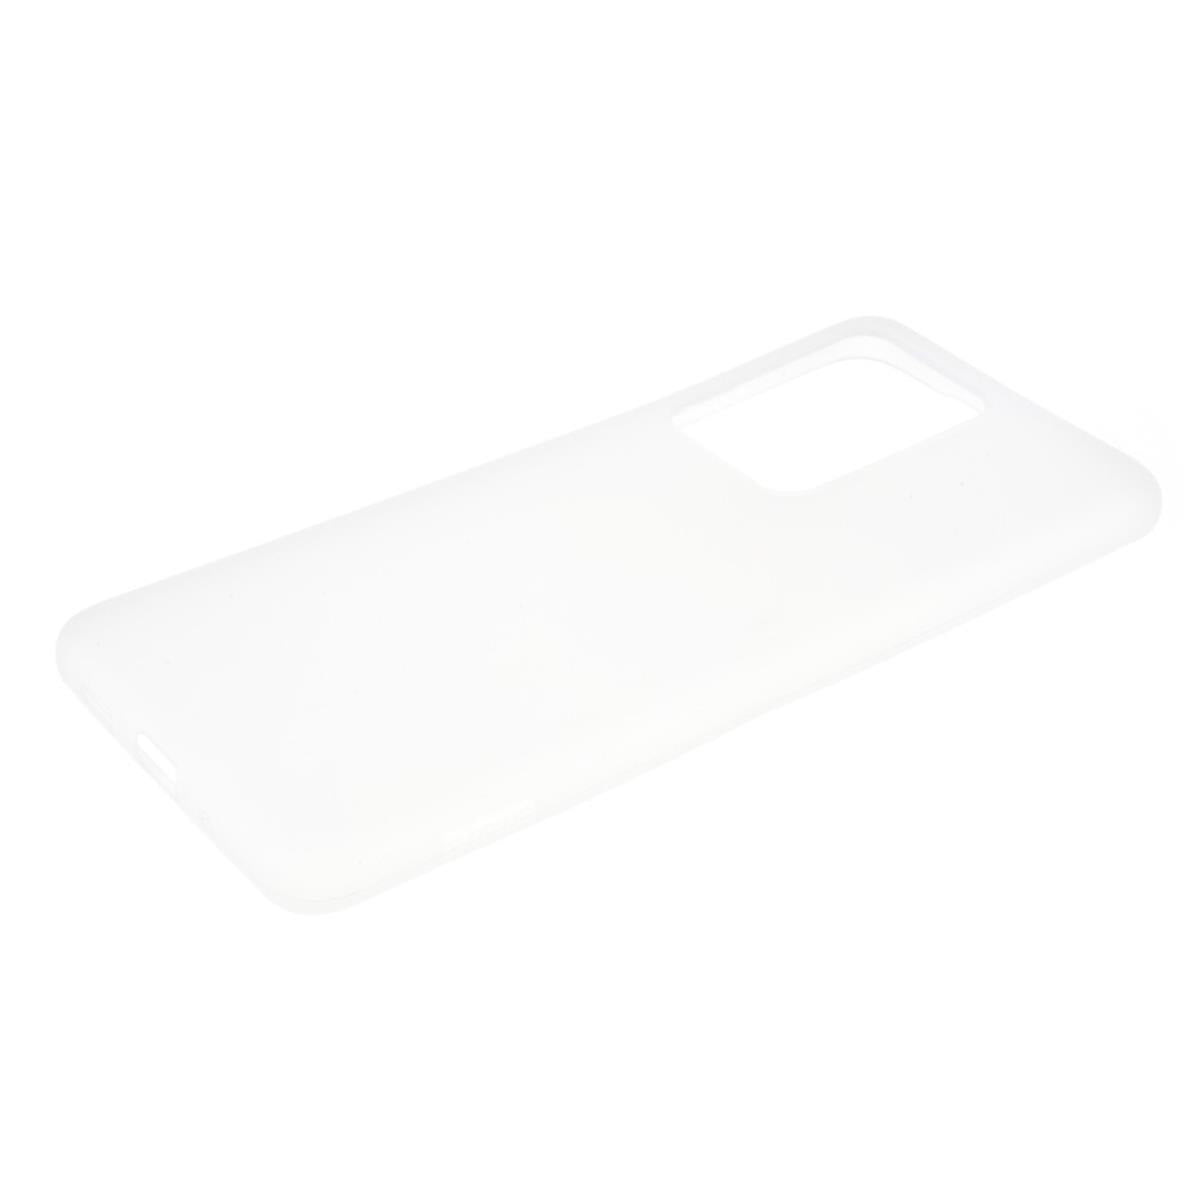 Hülle für Xiaomi Redmi 10/10 Prime Handyhülle Silikon Case Cover Etui Matt Weiß